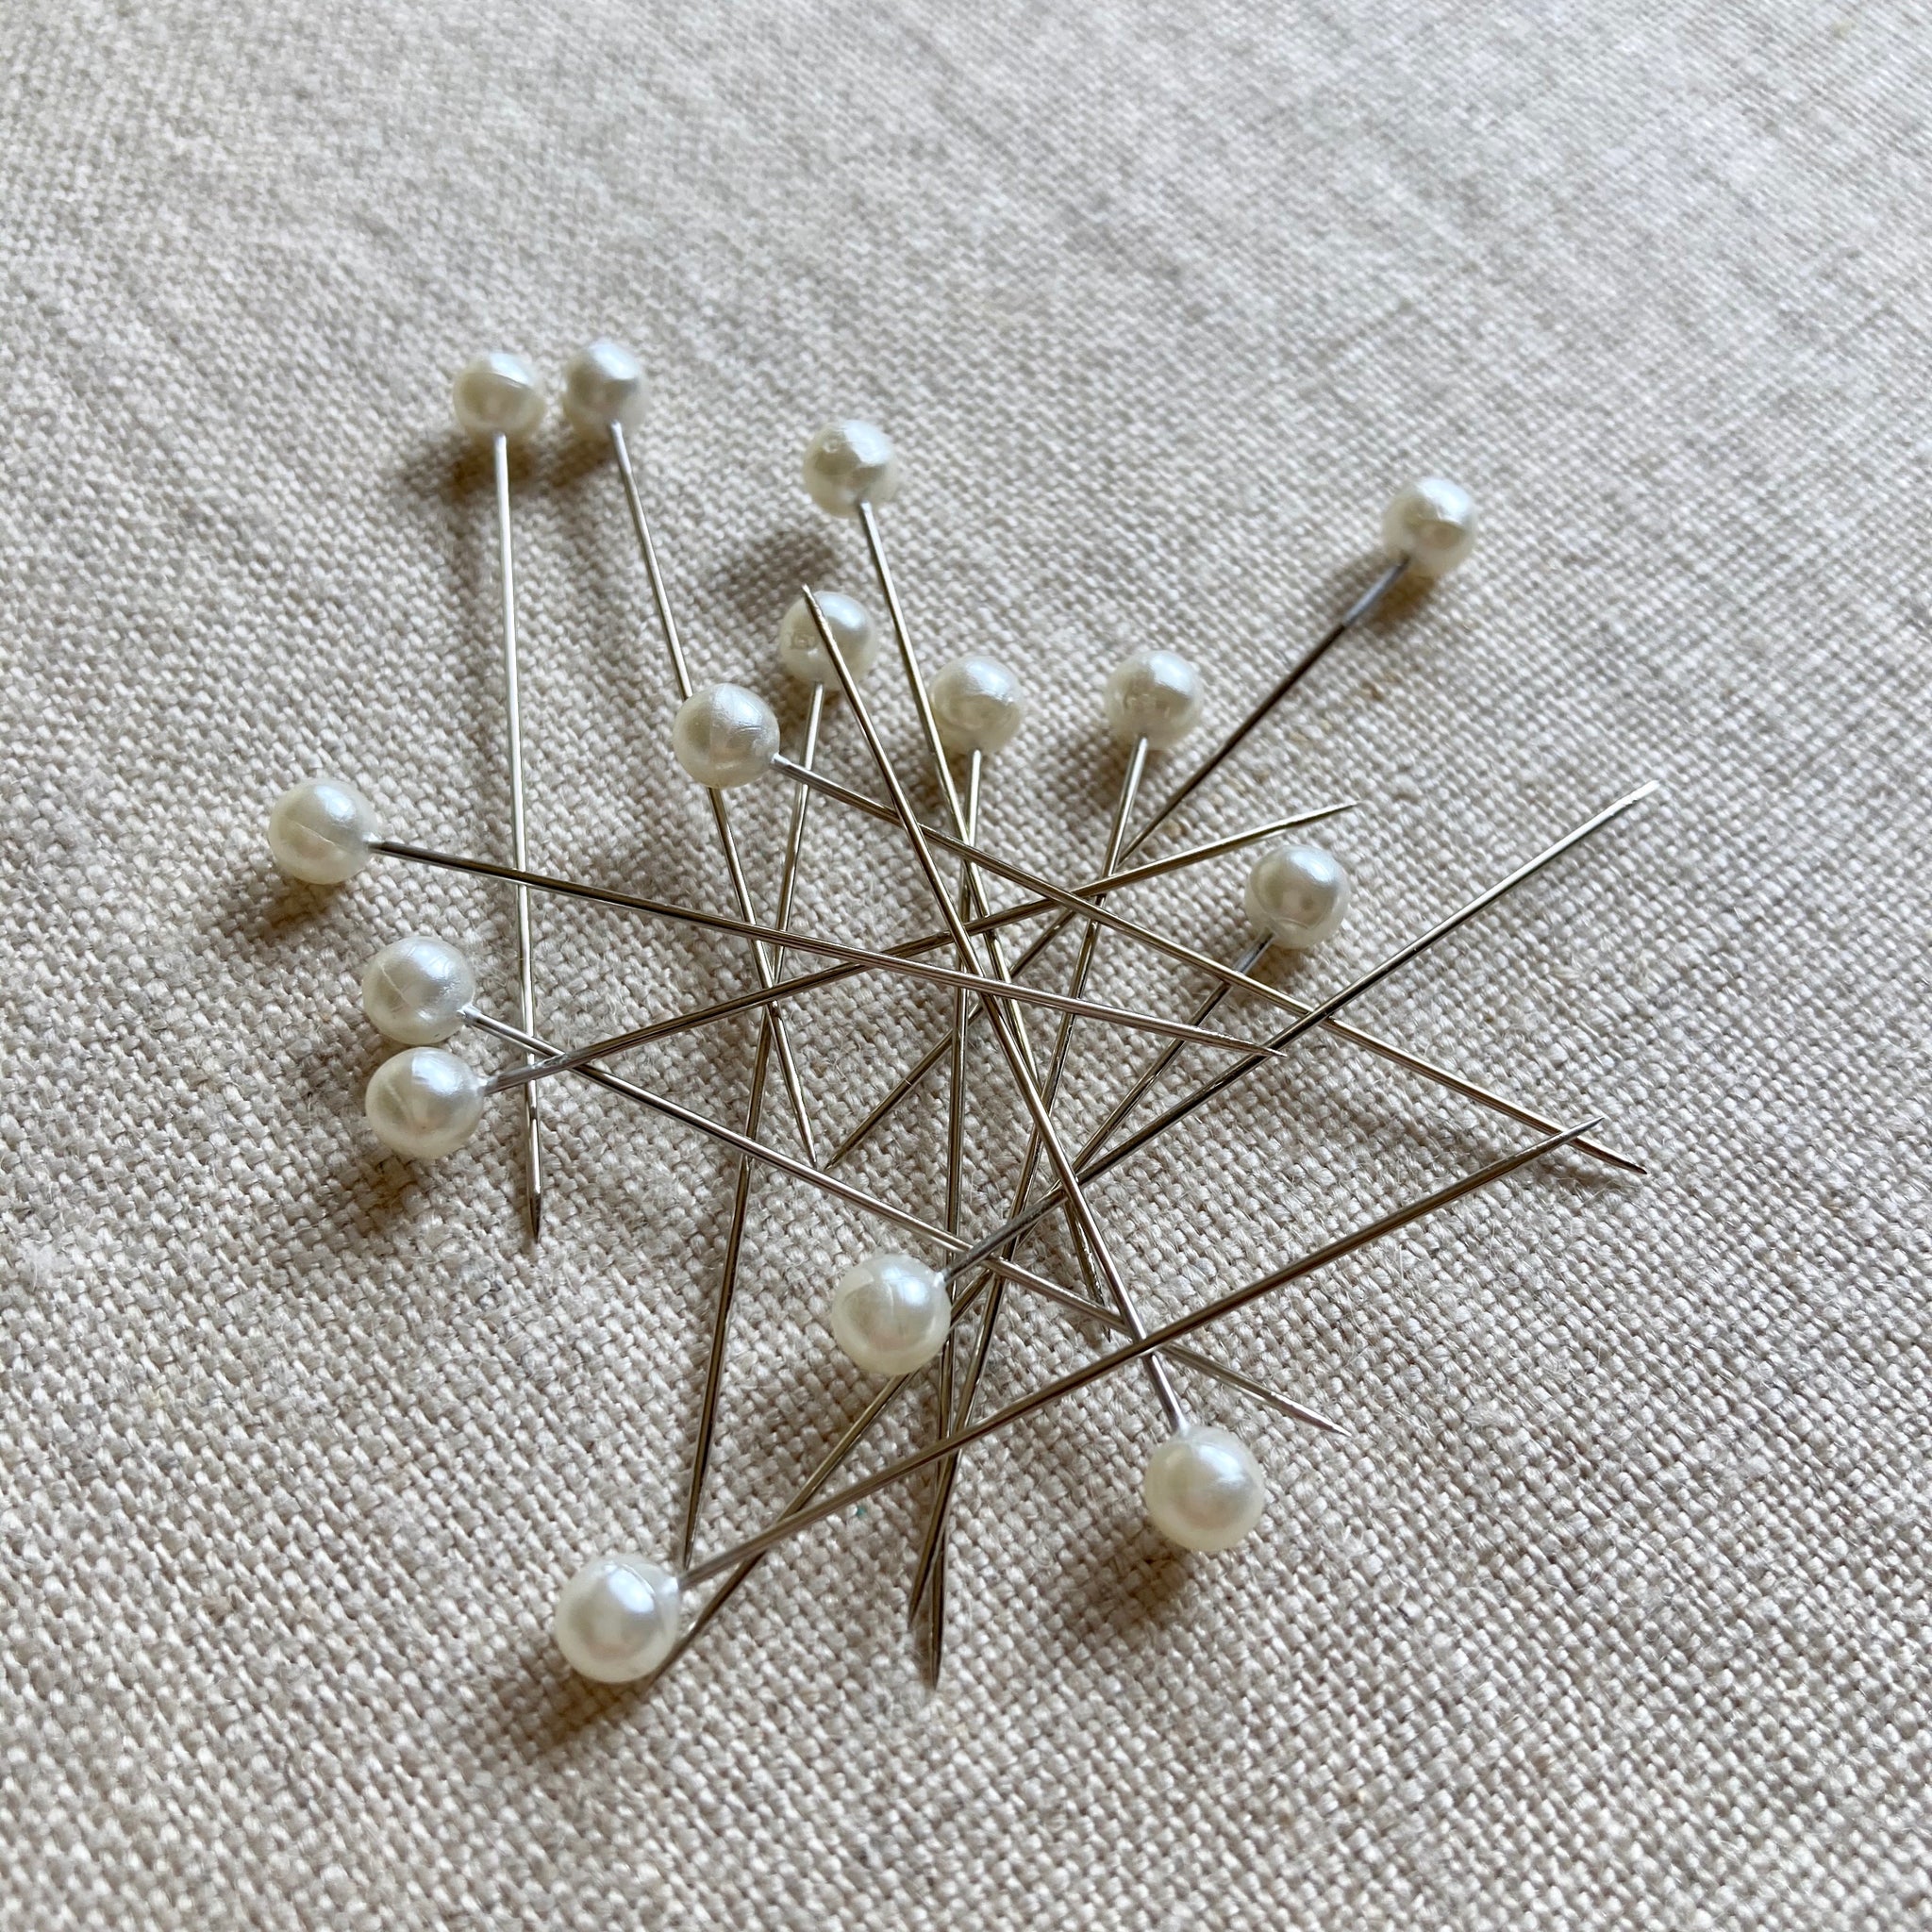 Long Pearlized Pins - 100 pcs – Sewing Kit Supply